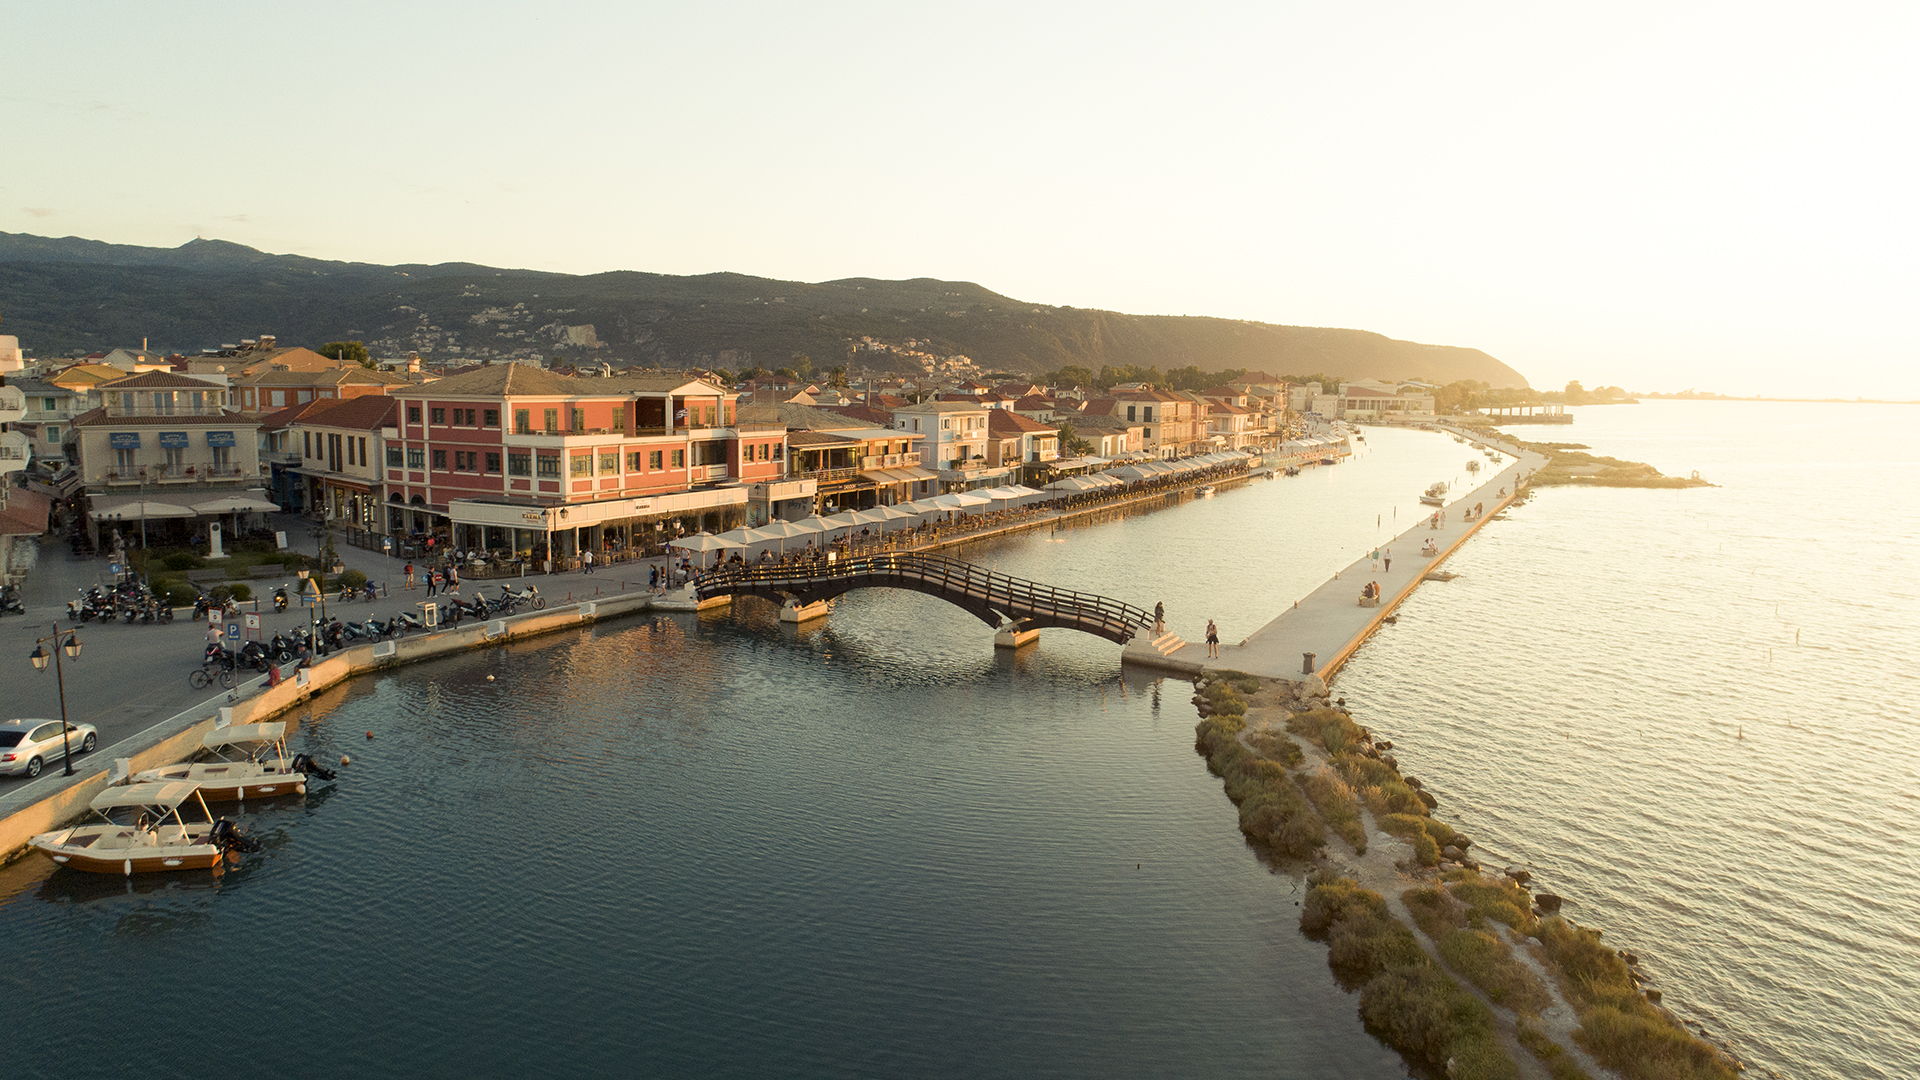 Take a stroll around Lefkadas town